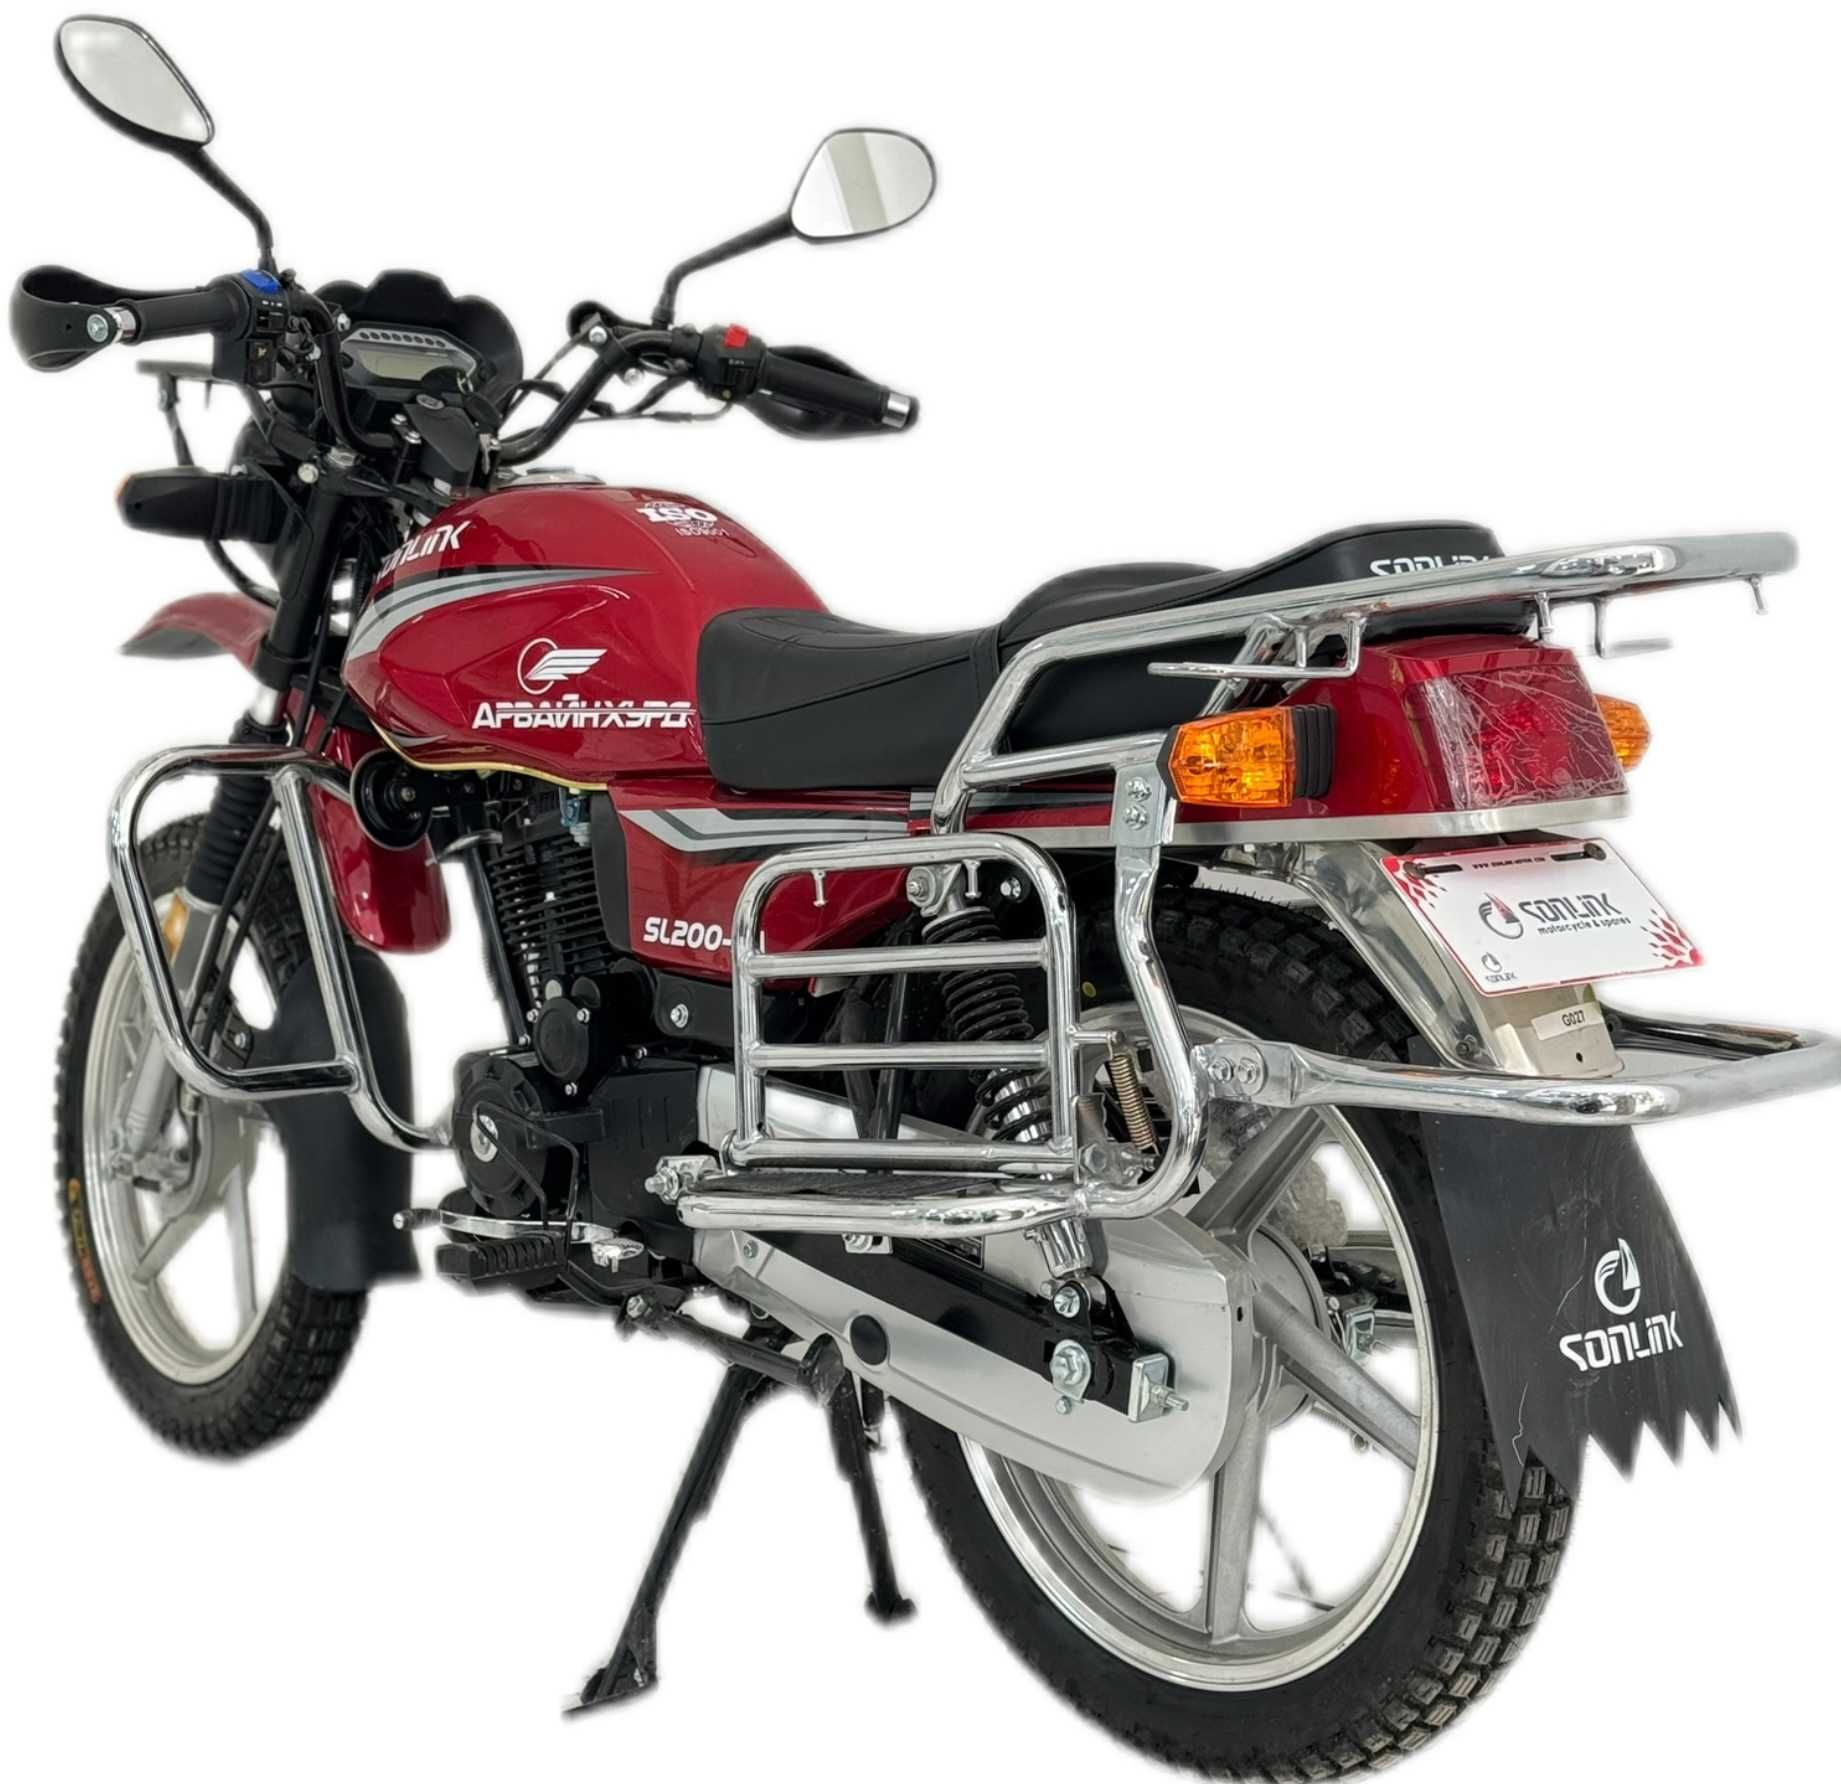 Мотоцикл 200CC Сонлинк; Мотоцикл Sonlink 200 куб;